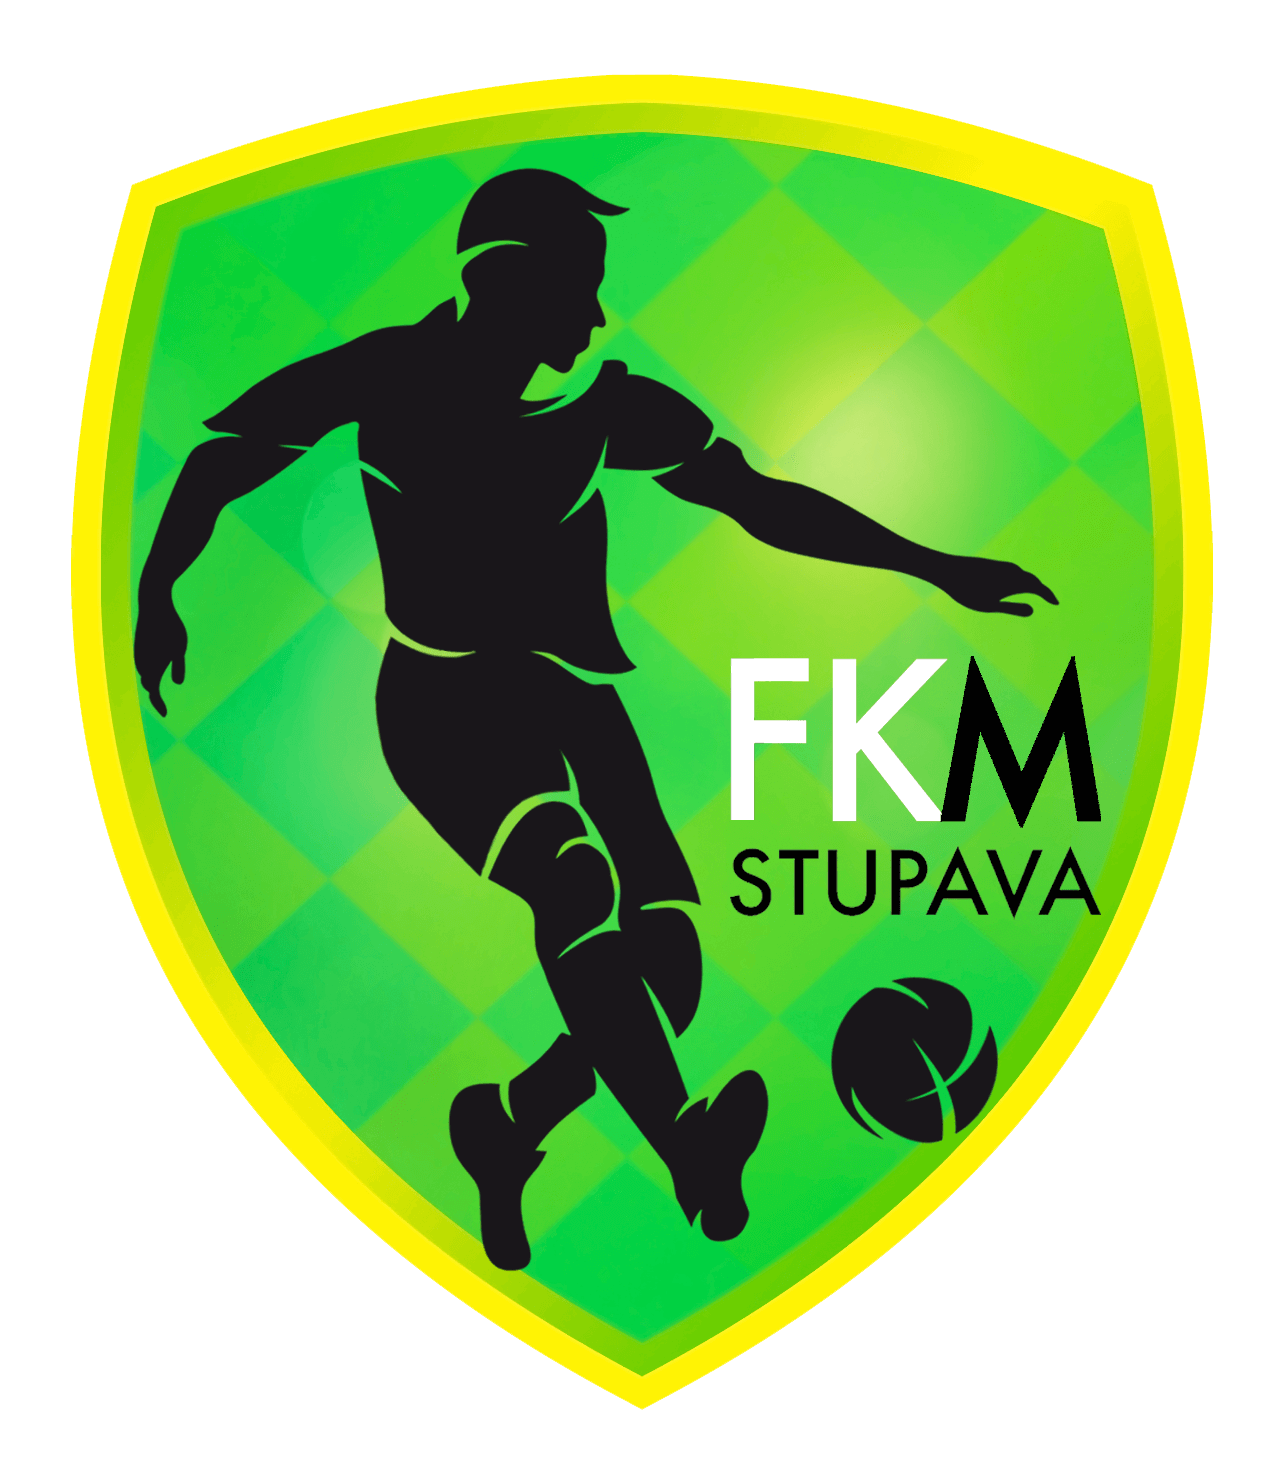 FKM Stupava